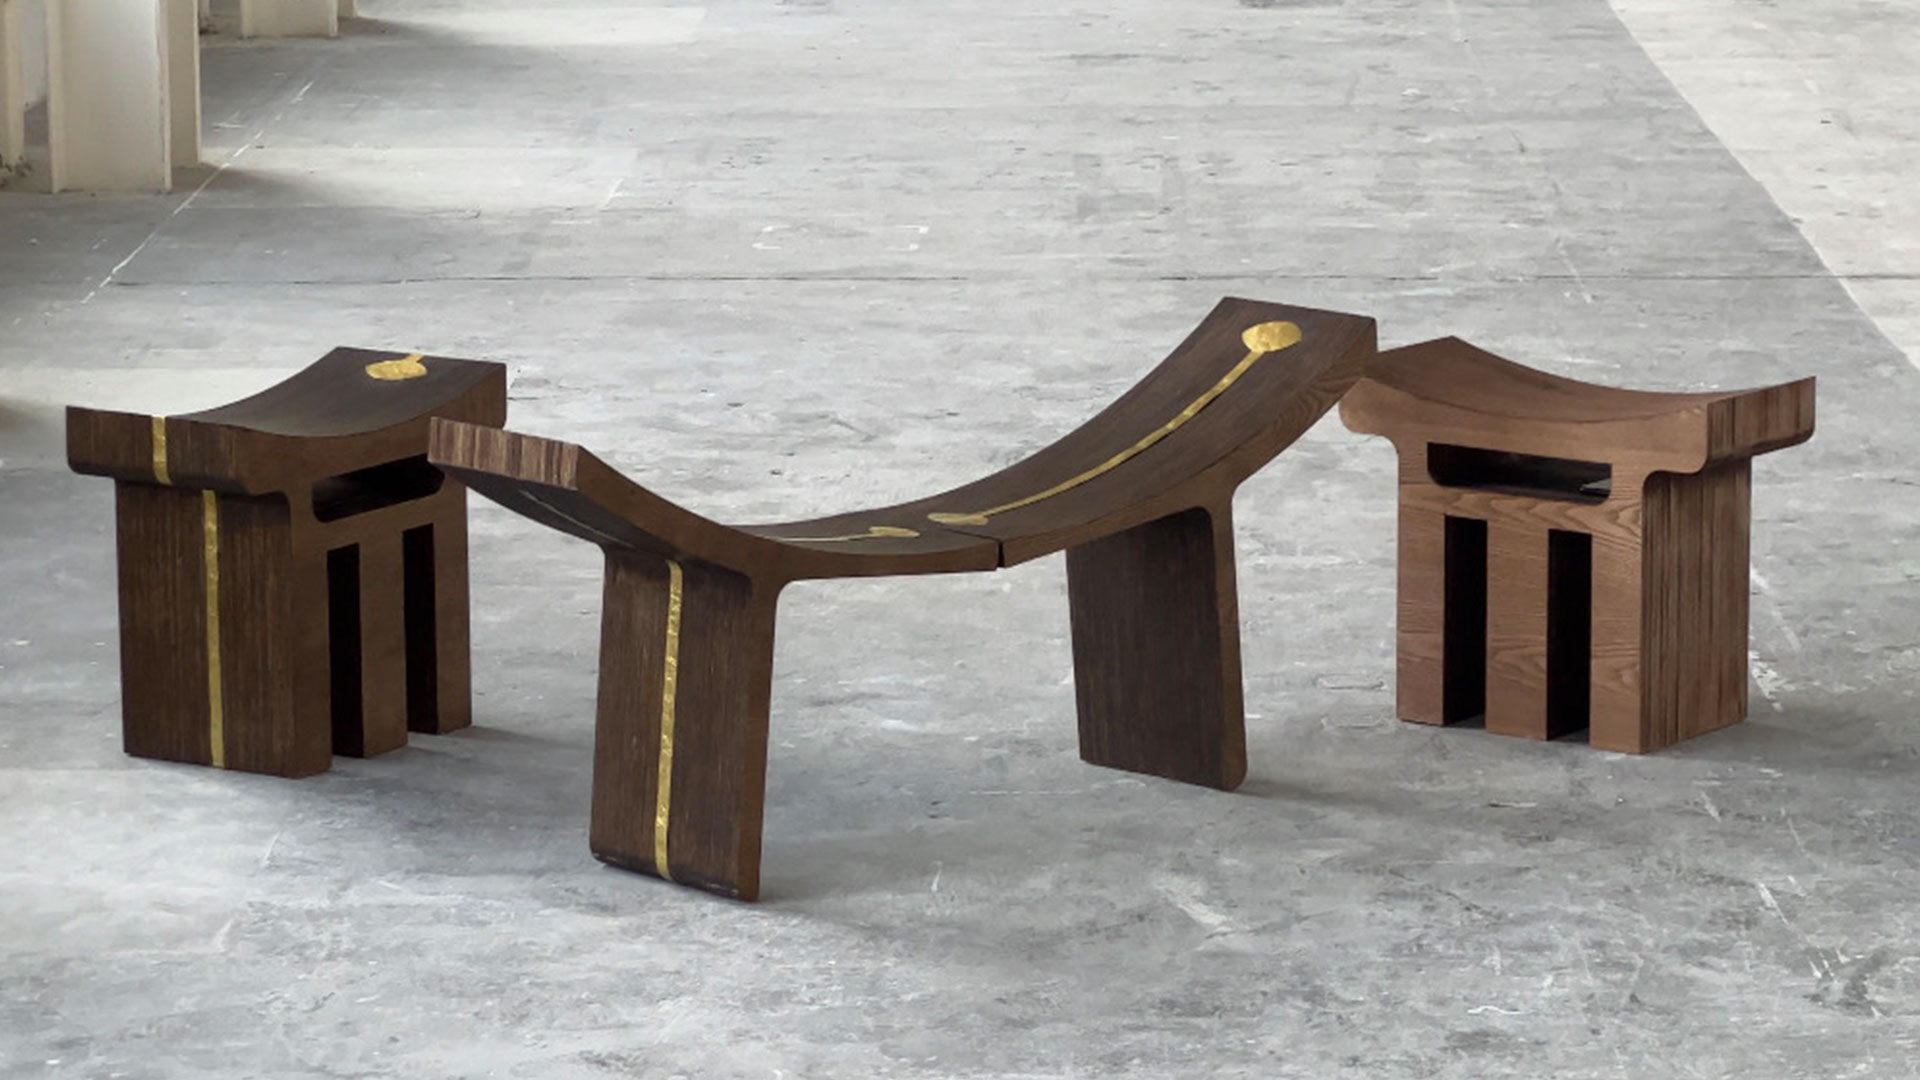 Abreham Brioschi traces his Ethiopian roots through futuristic furniture ensemble